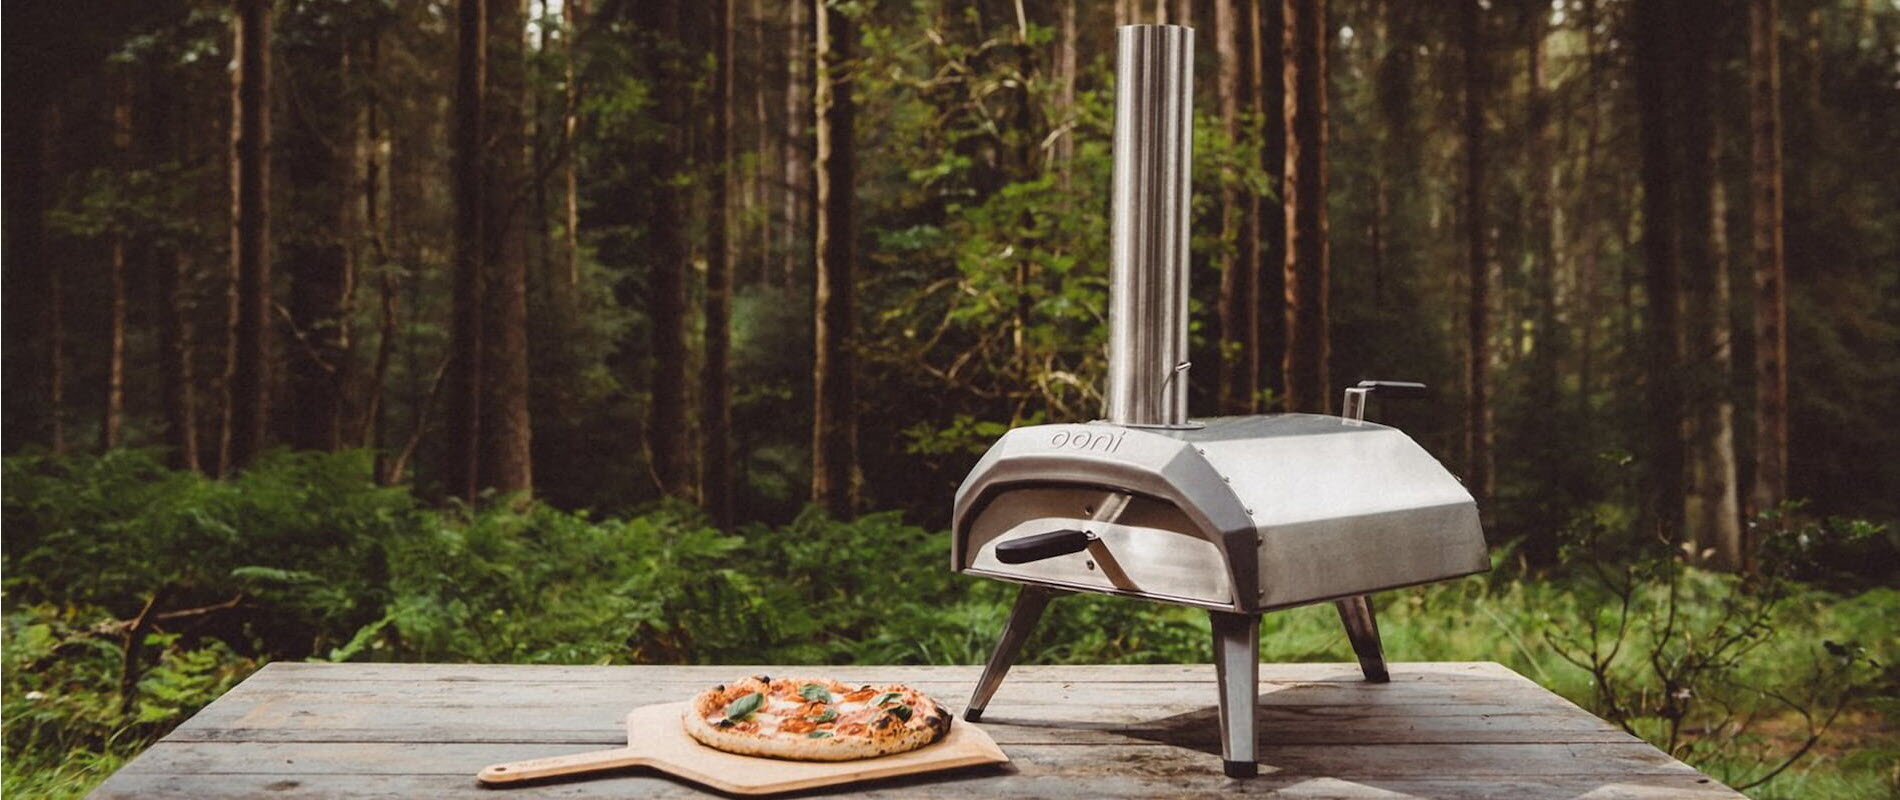 Pizzaovn - enkelt, sosialt og verdens beste pizza | Varmefag